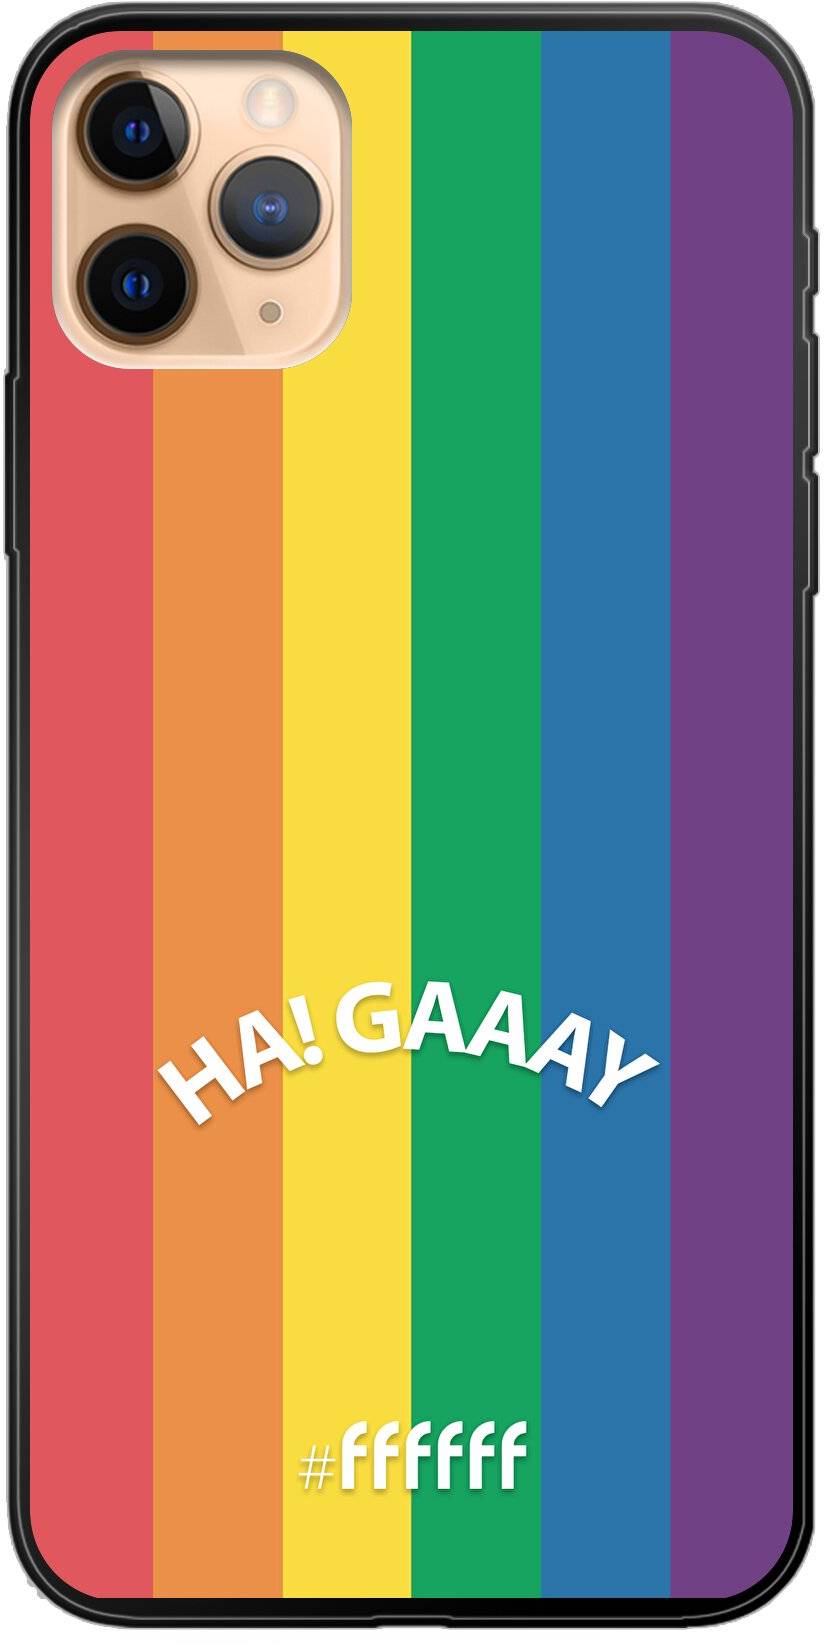 #LGBT - Ha! Gaaay iPhone 11 Pro Max